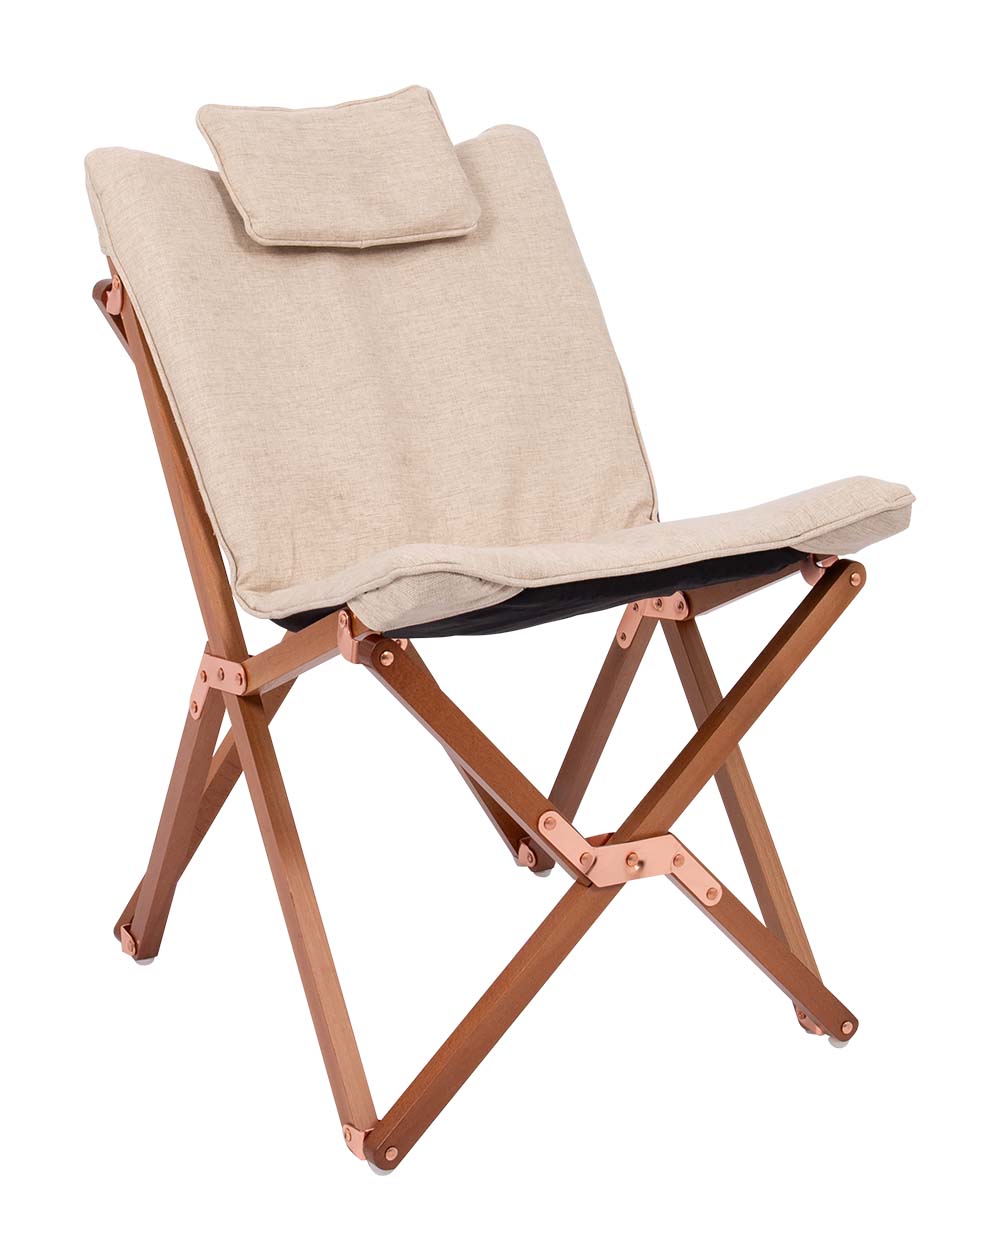 1200349 Een zeer luxe en comfortabele relaxstoel in de kleinste maat. Deze stoel is voorzien van een stijlvol en stevig houten frame. De zitting is gemaakt van Oxford polyester en heeft een linnen look. Daarnaast is de stof voorzien van een comfortabele gepolsterde vulling. De combinatie van de gepolsterde stof en het hoofdkussen maakt deze comfortabel. Het frame is inklapbaar waardoor de stoel eenvoudig is mee te nemen. Maar ook in de woonkamer, op het balkon of in de tuin kan deze stoel worden gebruikt!